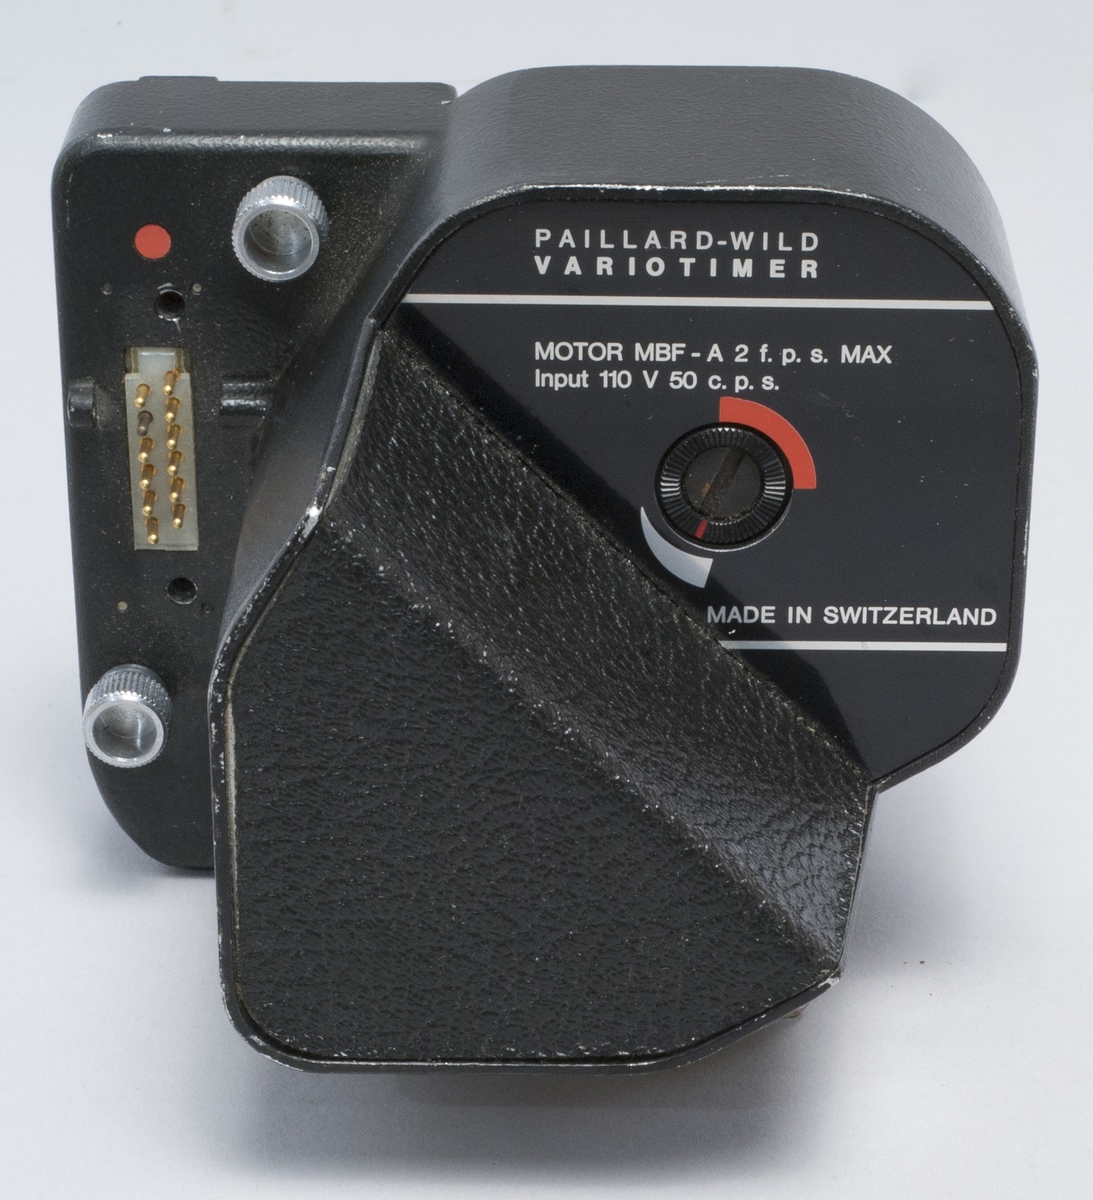 Timerstyrd motor för enbildstagning med Bolex Paillard 16 mm filmkamera. Tillverkare Paillard-Wild typ Variotimer MBF-A, maximalt 2 bilder per sekund. För 110 V 50 perioder nätdrift.